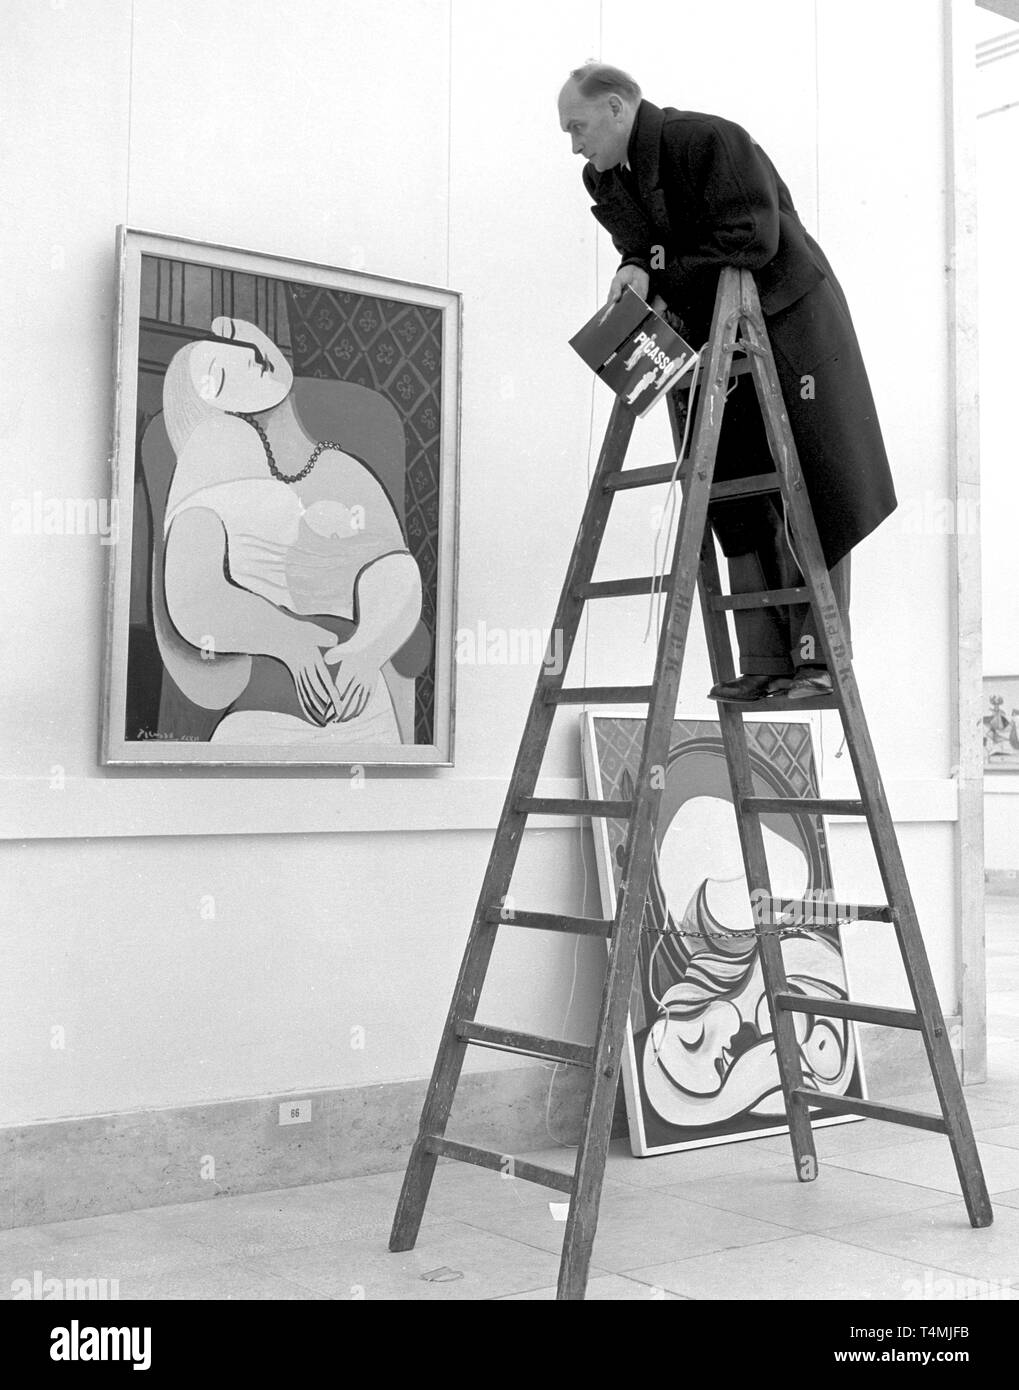 Un visiteur se dresse sur une échelle pour observer les painitng 'Le Rêve (le rêve)' à partir de 1932 dans l'exposition, qui sera présentée pendant deux mois sous le thème "rétrospective Picasso'. L'exposition includeds 250 ouvrages de le peintre espagnol Pablo Picasso, qui célèbre son 74e anniversaire le jour de l'ouverture le 25 octobre 1955. Dans le monde d'utilisation | Banque D'Images